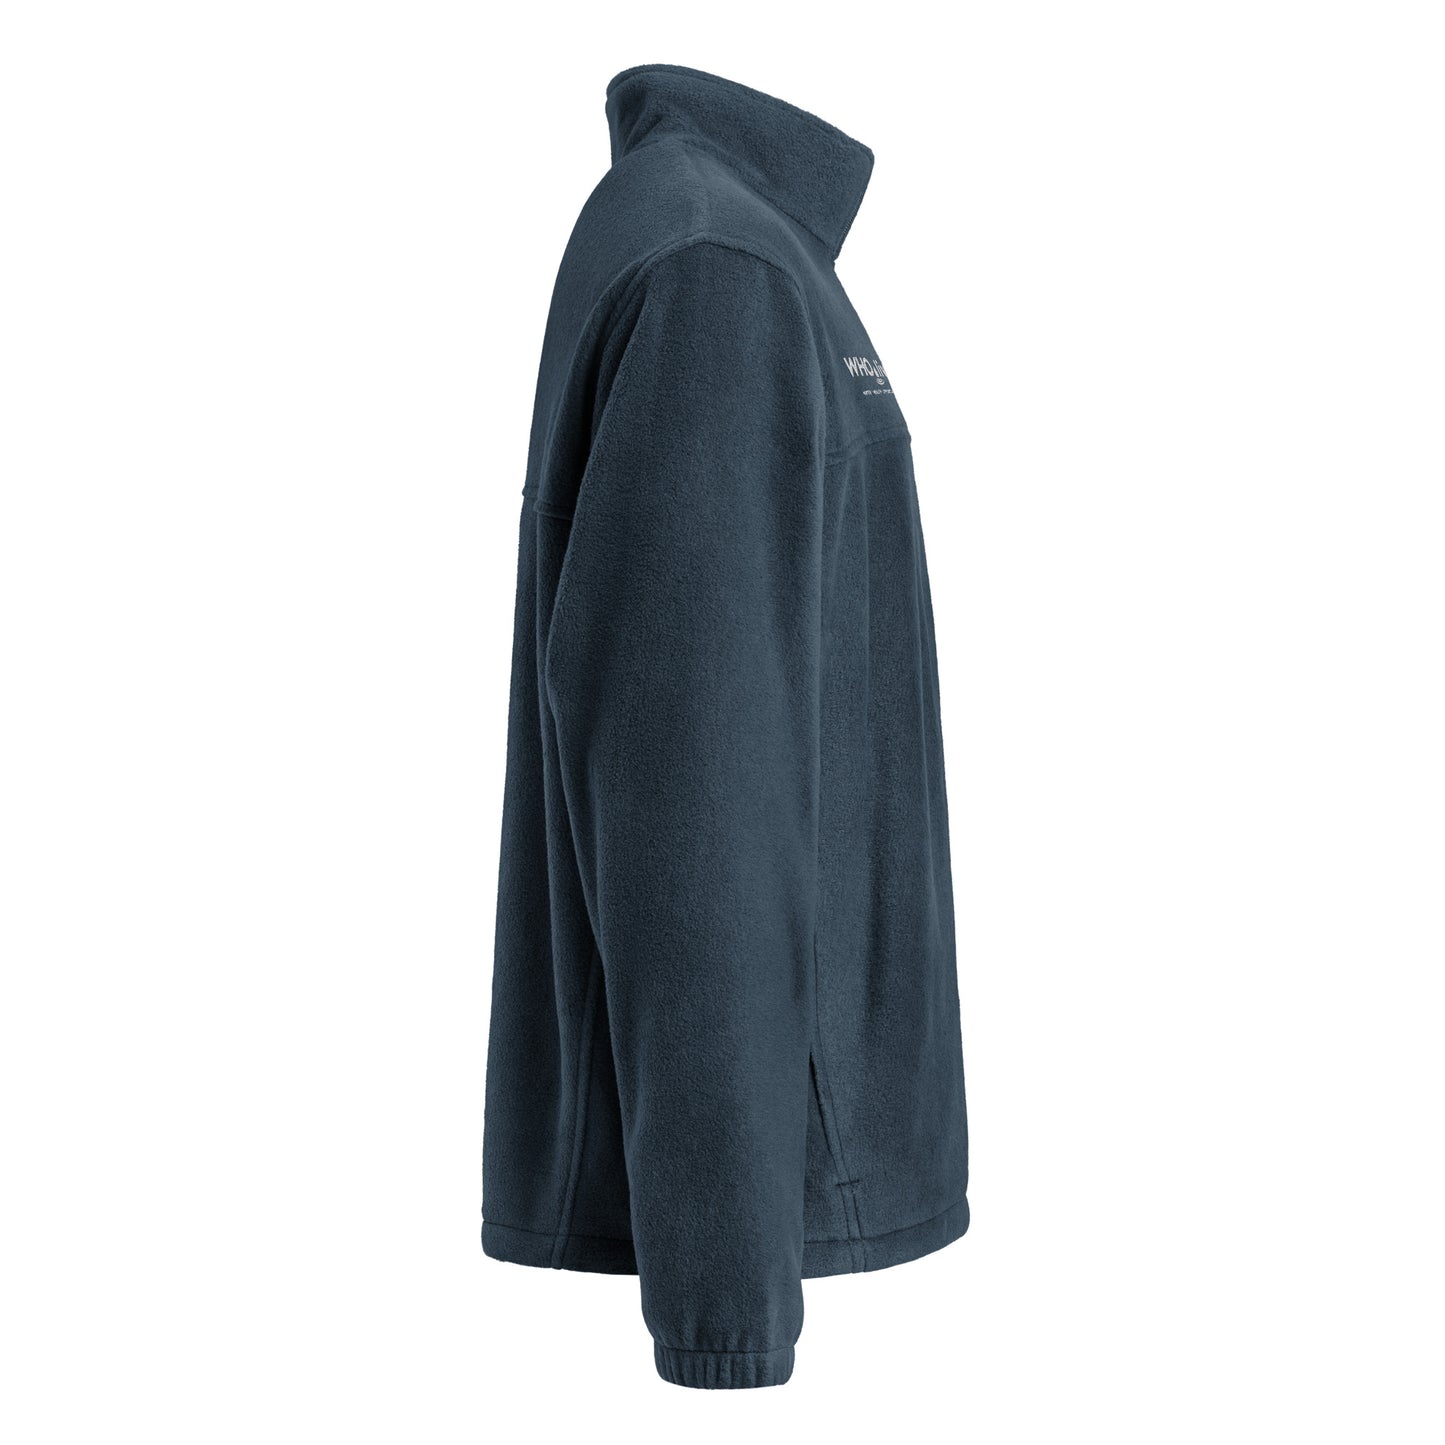 Columbia fleece jacket (unisex)